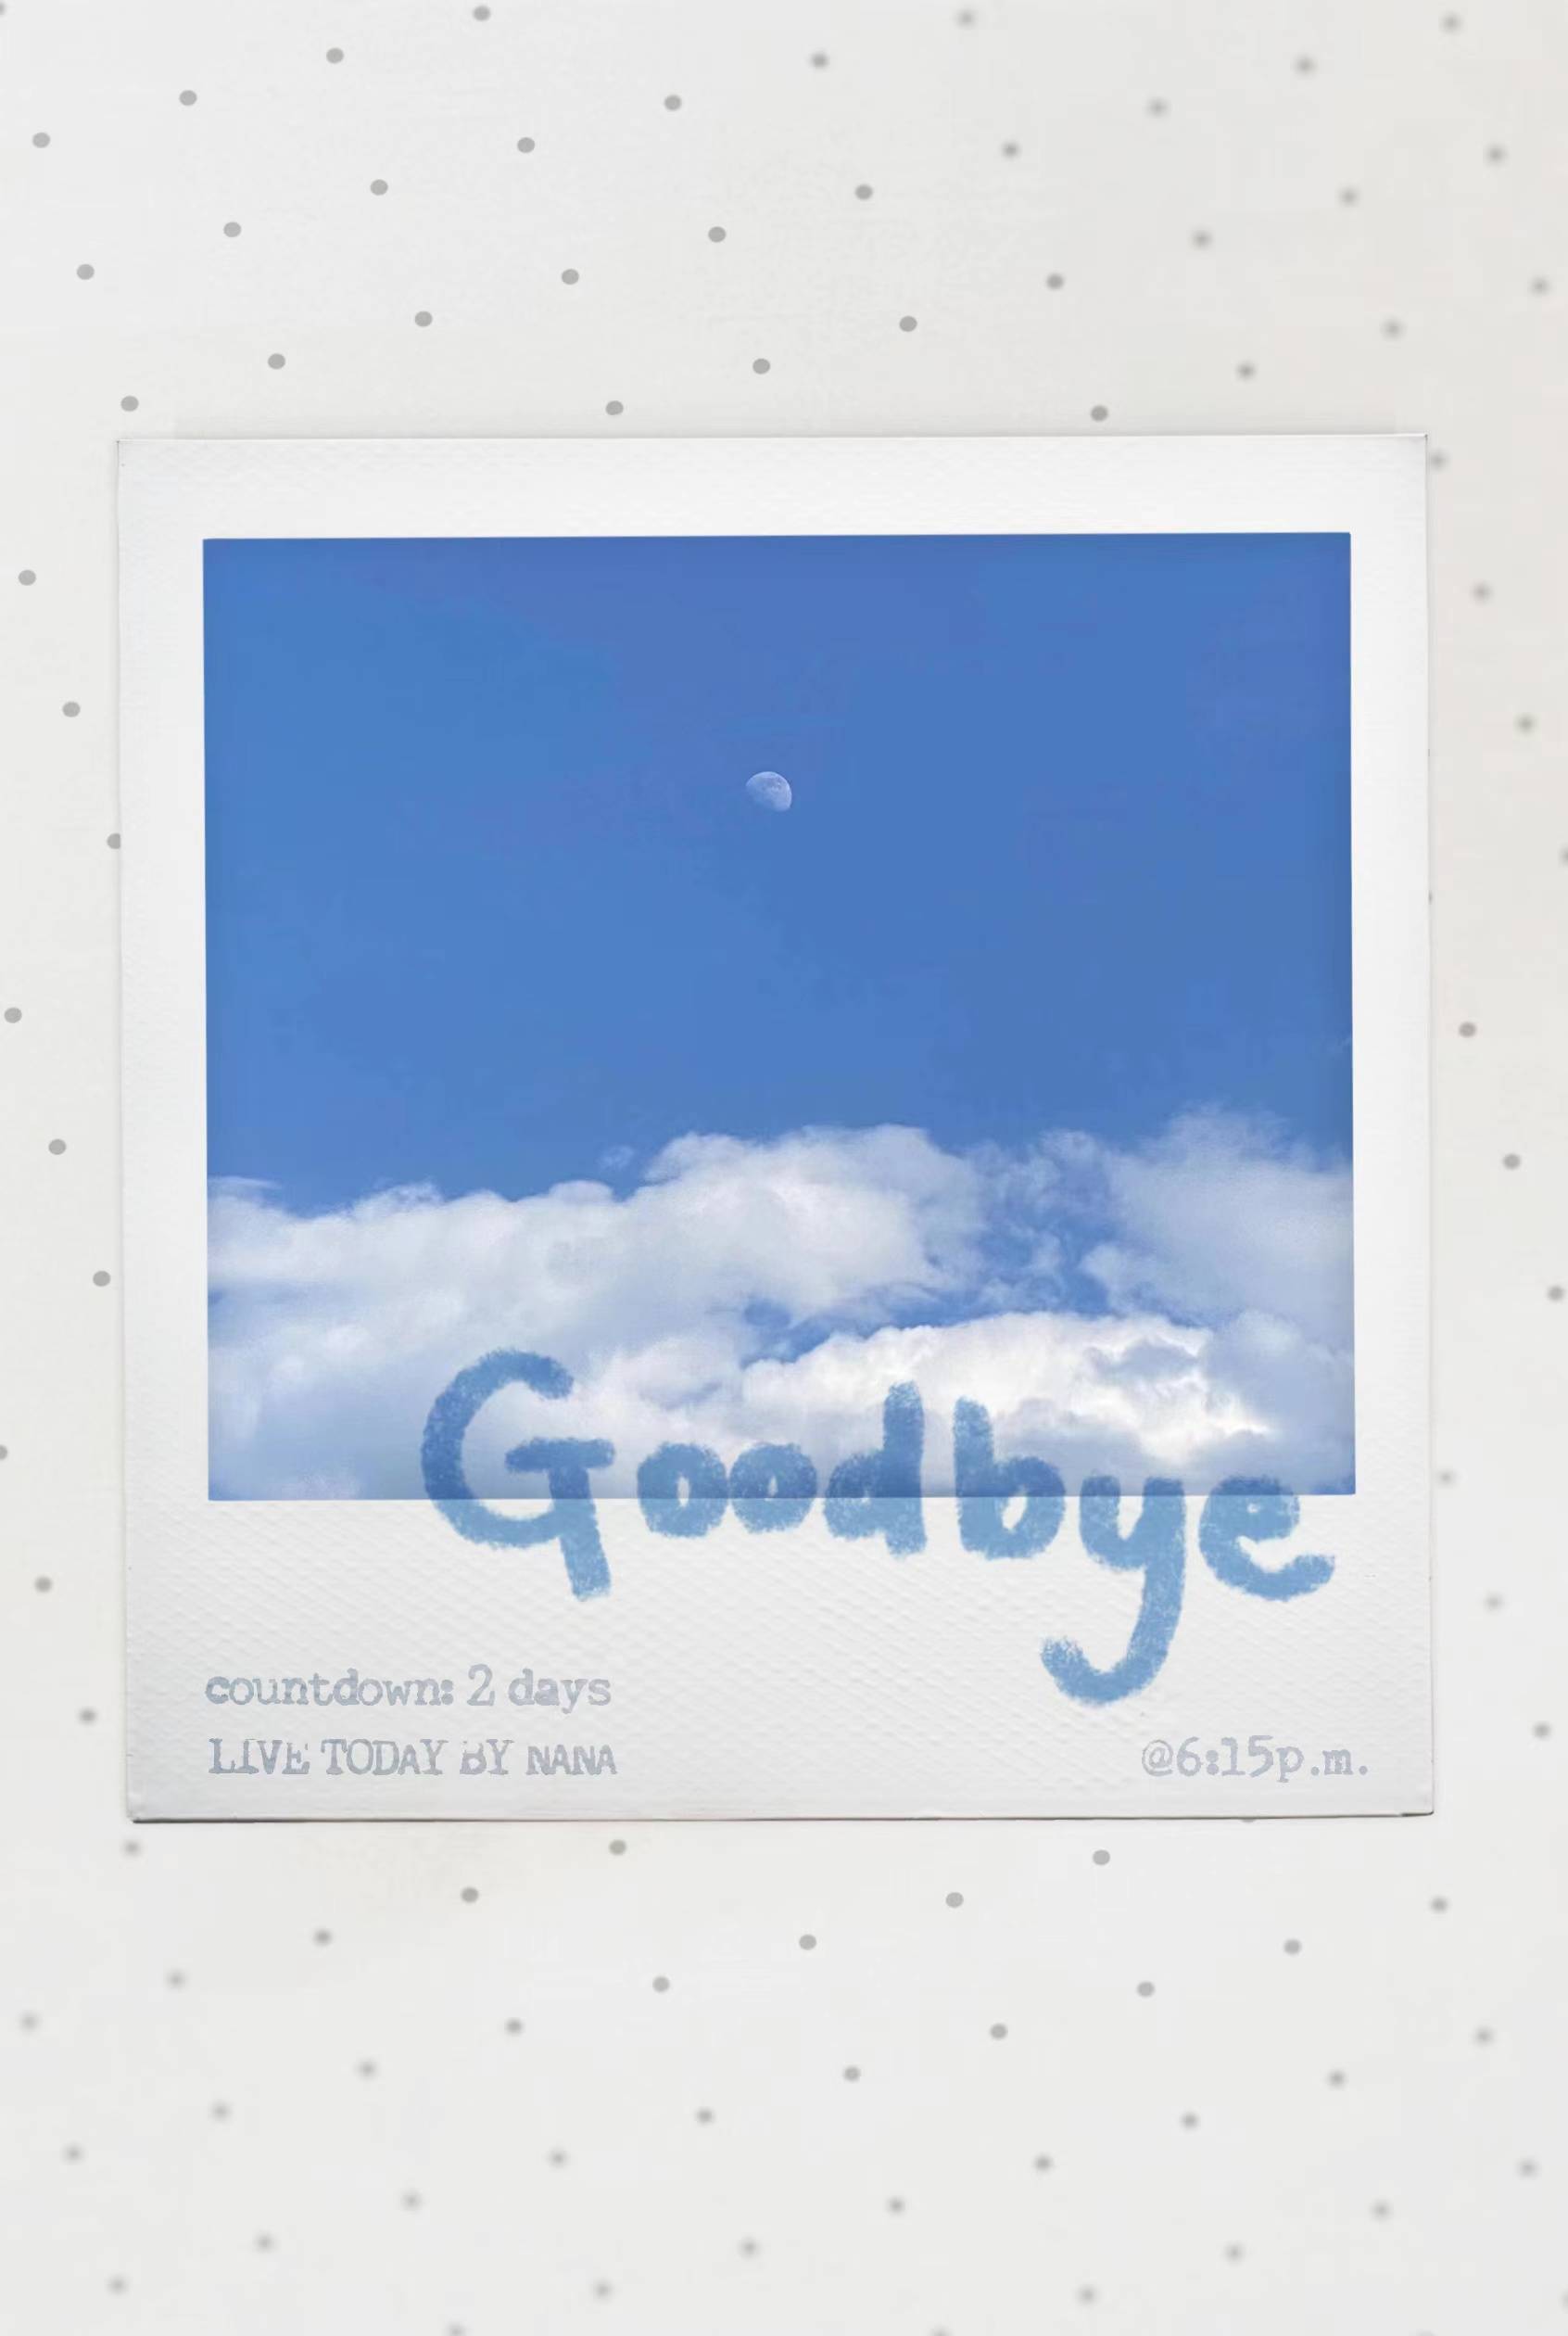 欧阳娜娜原创专辑首支单曲《Goodbye》上线 透过音乐展现